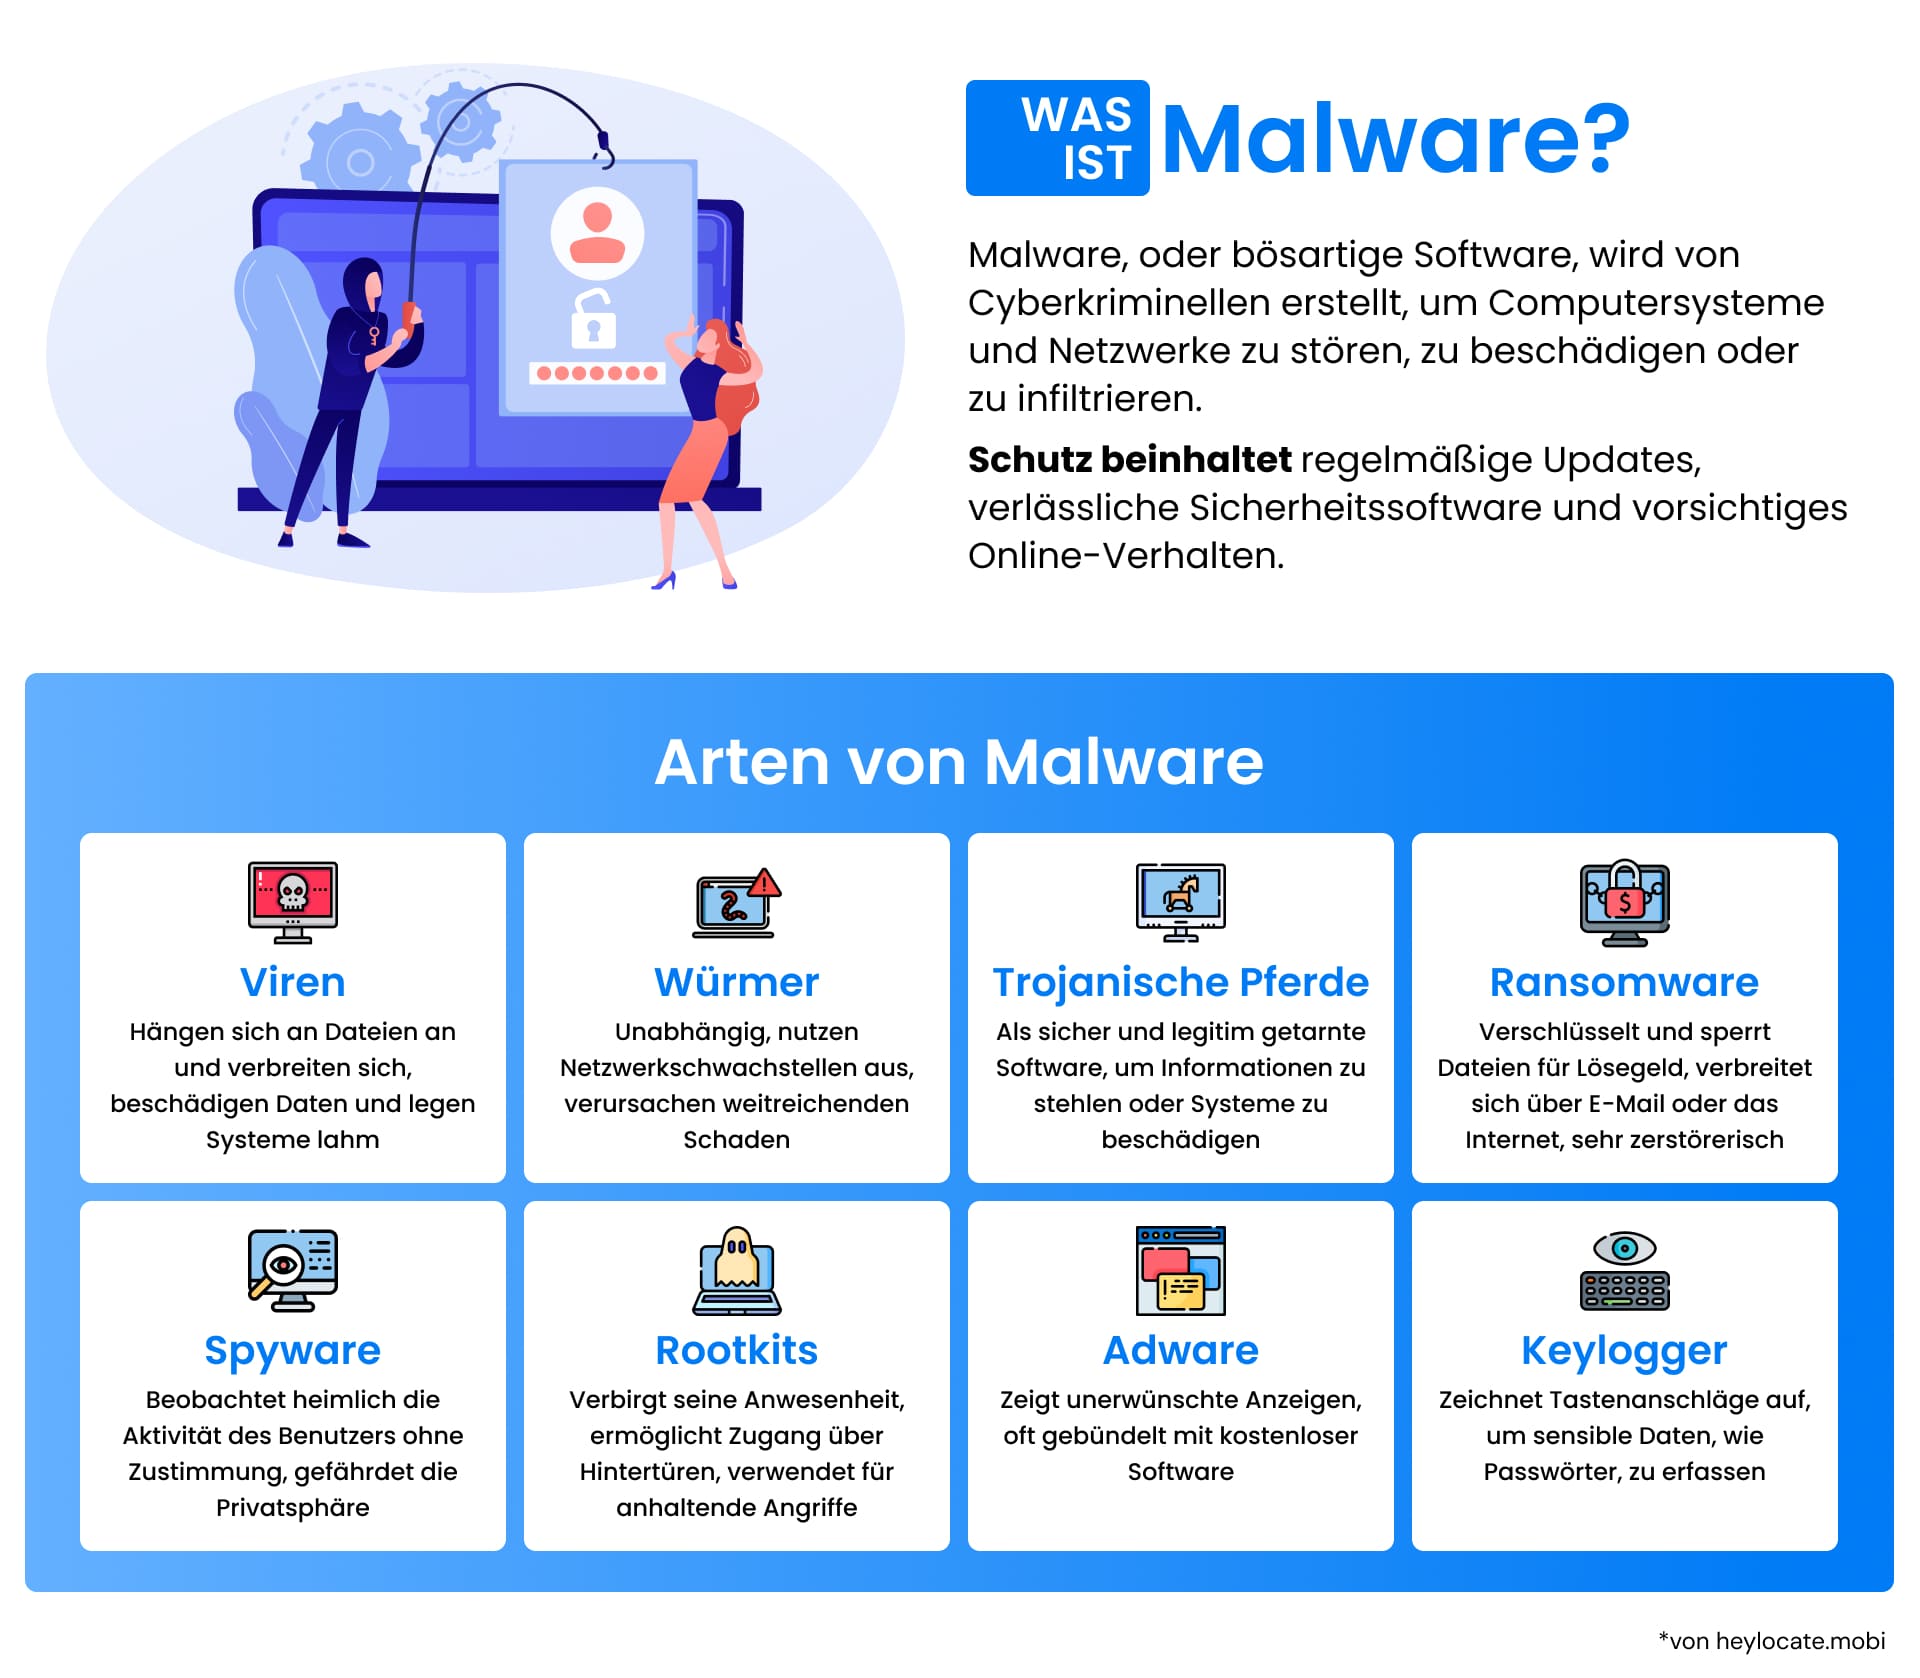 Eine informative Grafik, die verschiedene Arten von Malware, einschließlich Viren, Würmer und Ransomware, und ihre Auswirkungen auf die Cybersicherheit darstellt